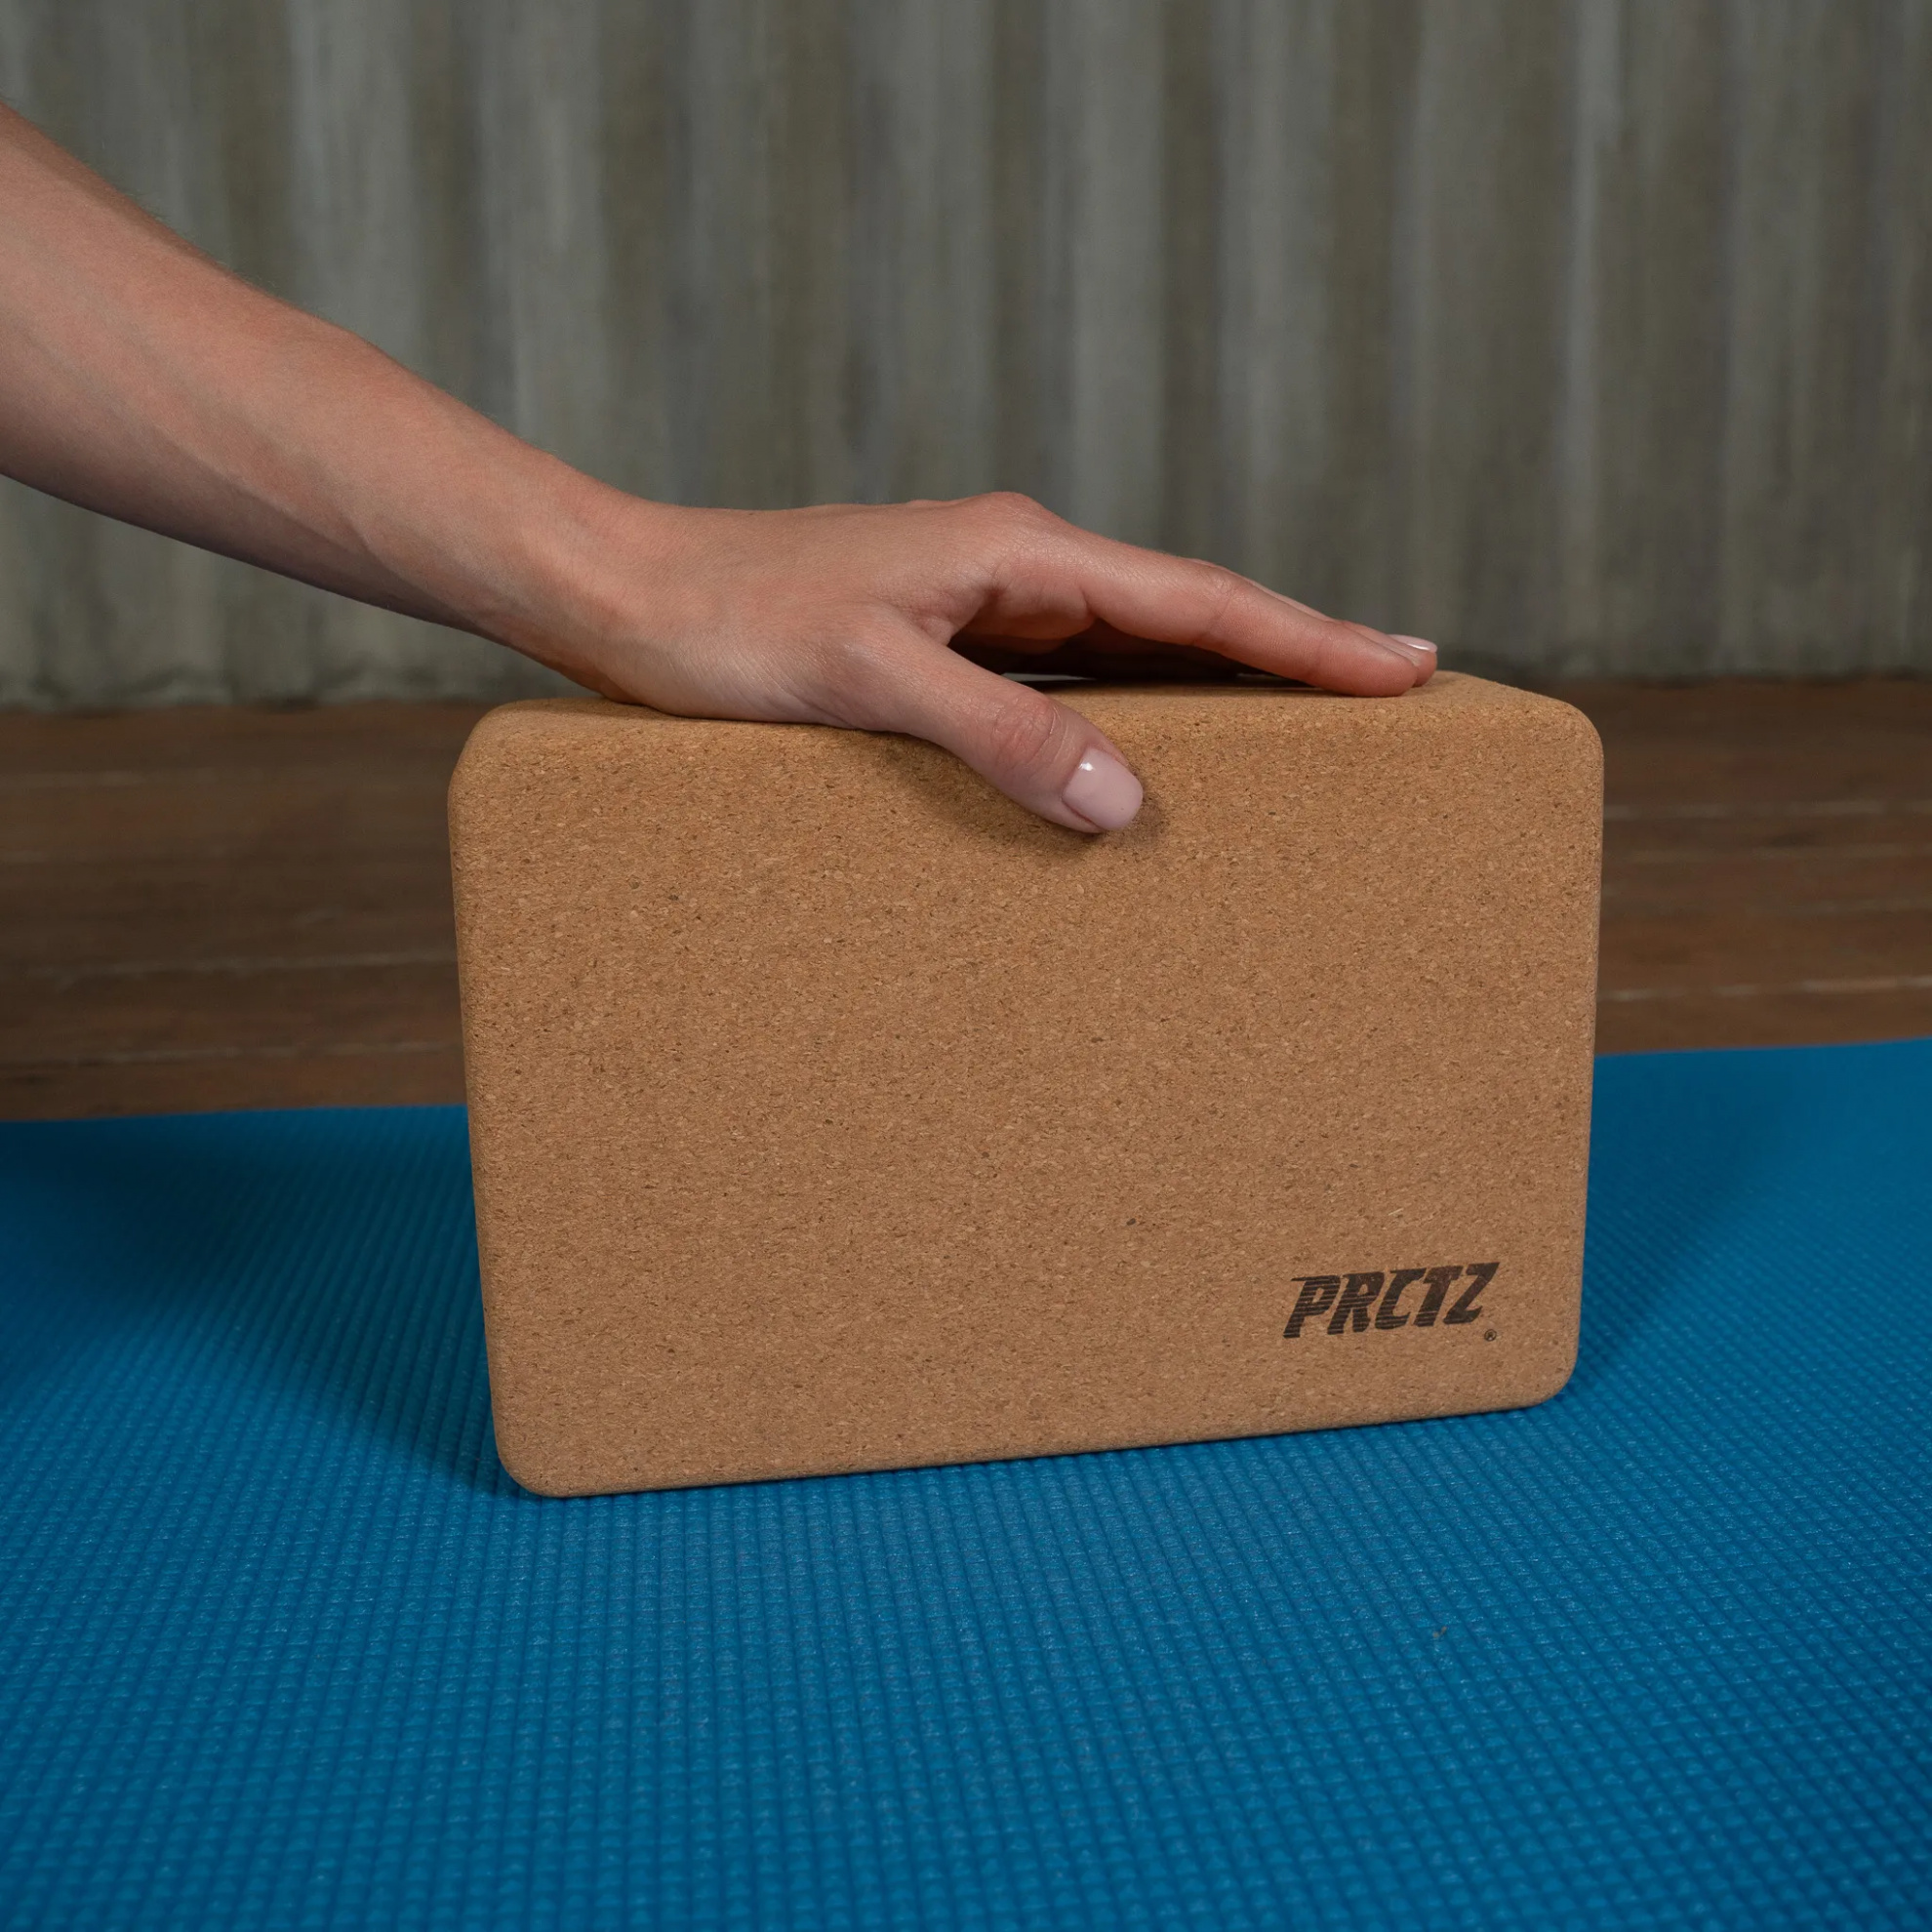 Блок для йоги PRCTZ Cork Yoga Block